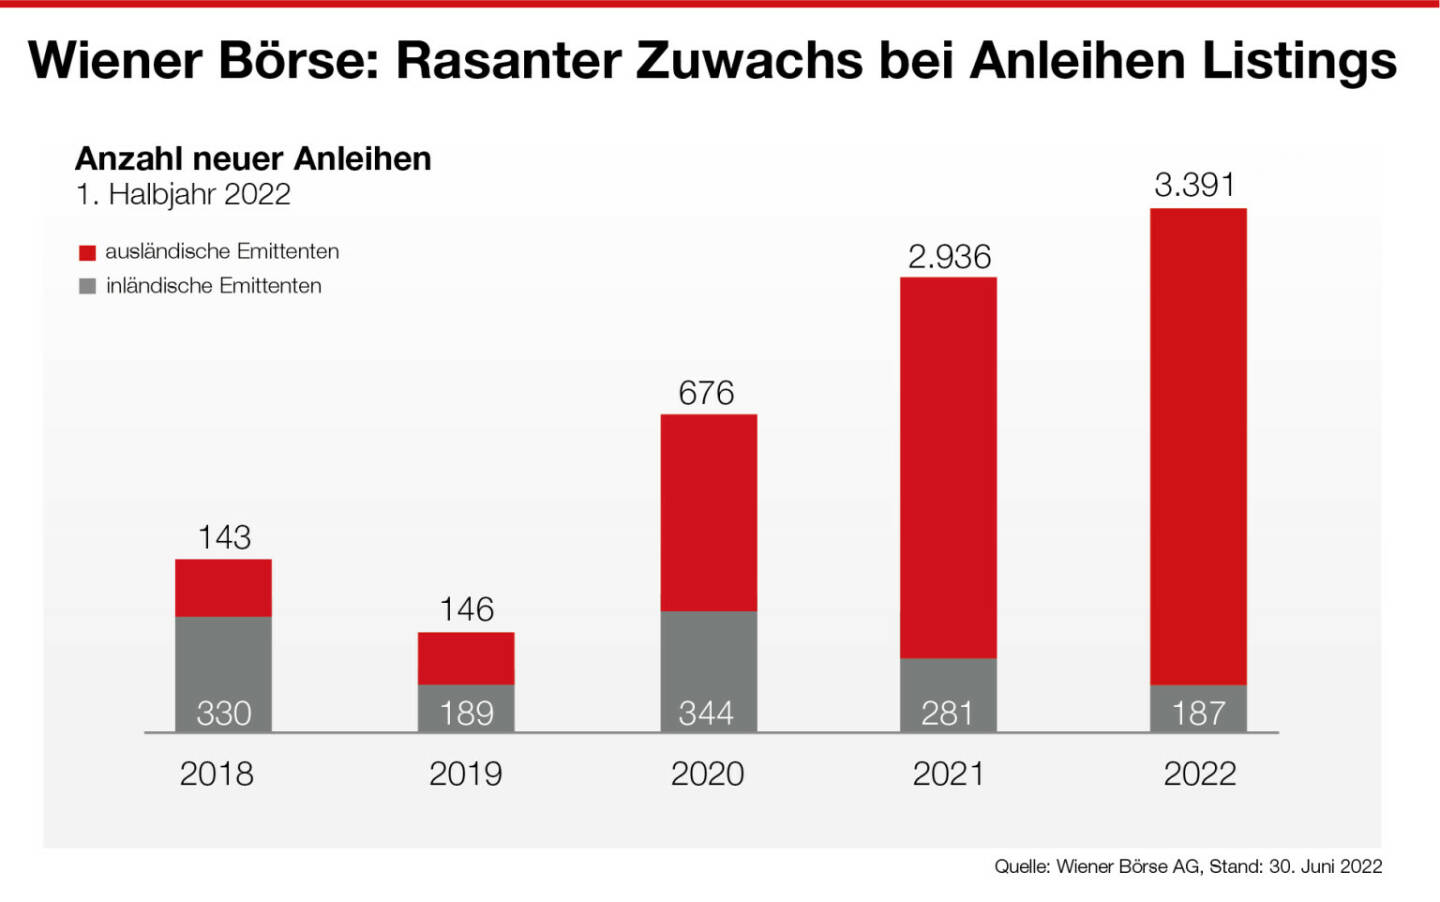 Anleihen-Listings 1. Halbjahr 2022, Wiener Börse 